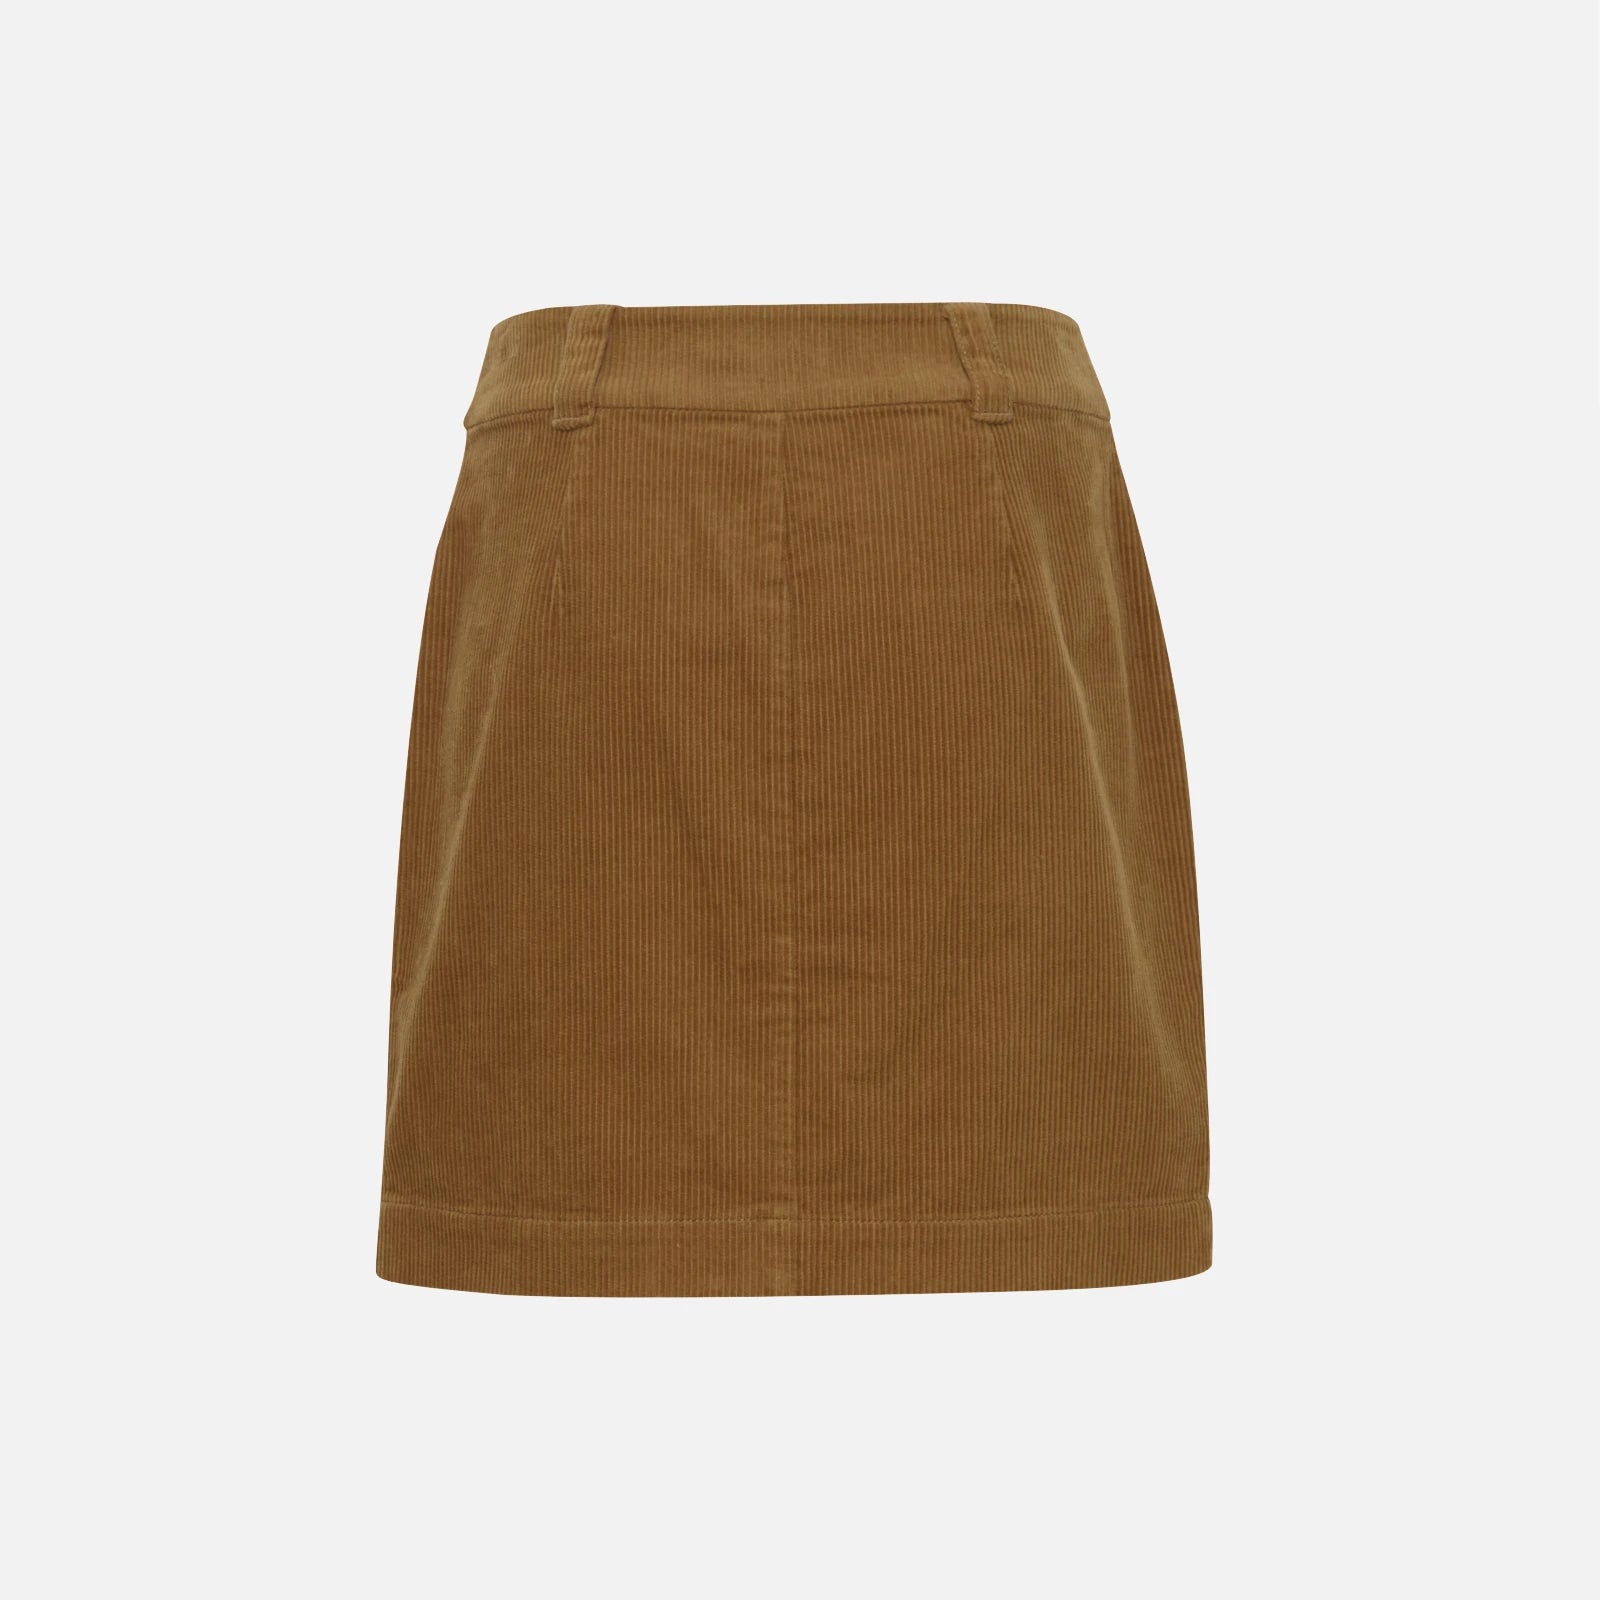 Irrosette nederdel i fløjl fra Atelier Rêve (bag)